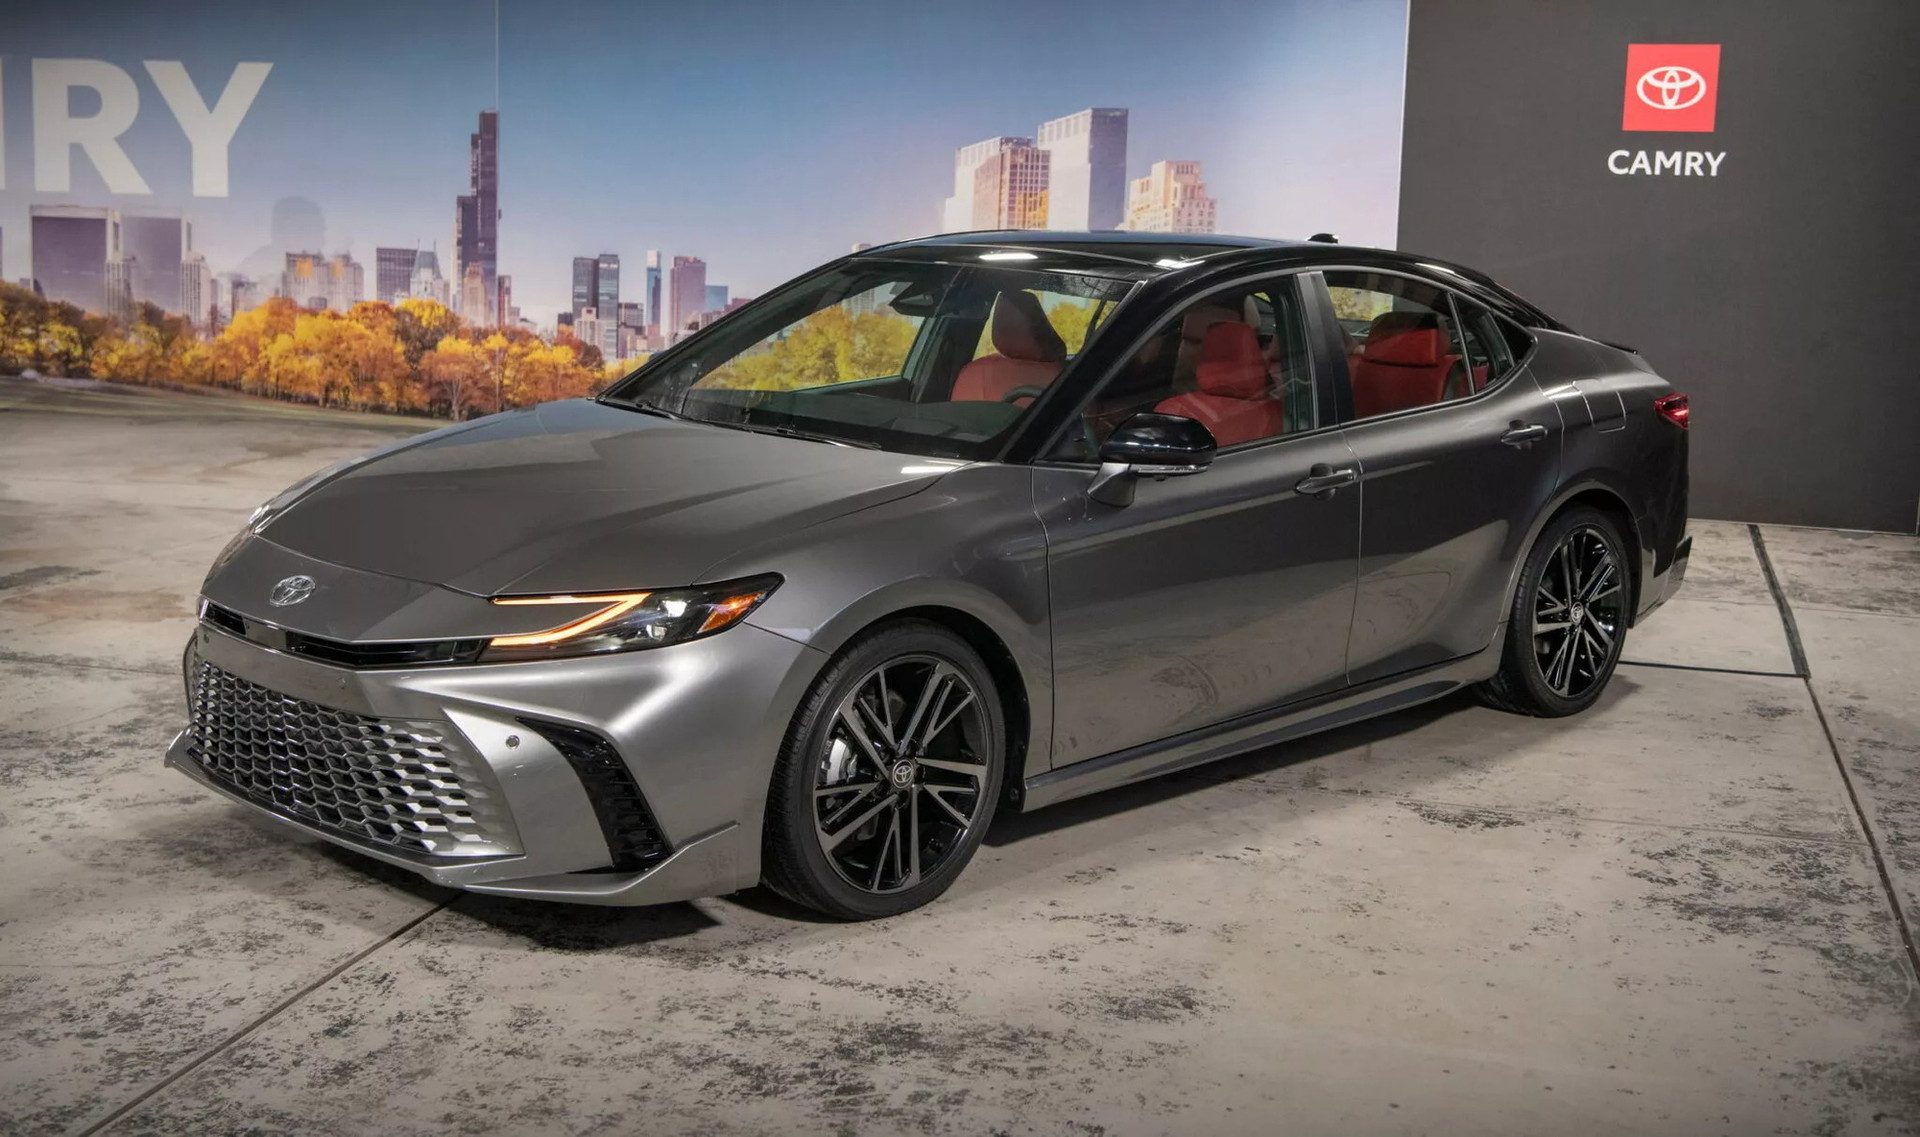 Toyota Camry đời mới chính thức chào sân - Ảnh 6.